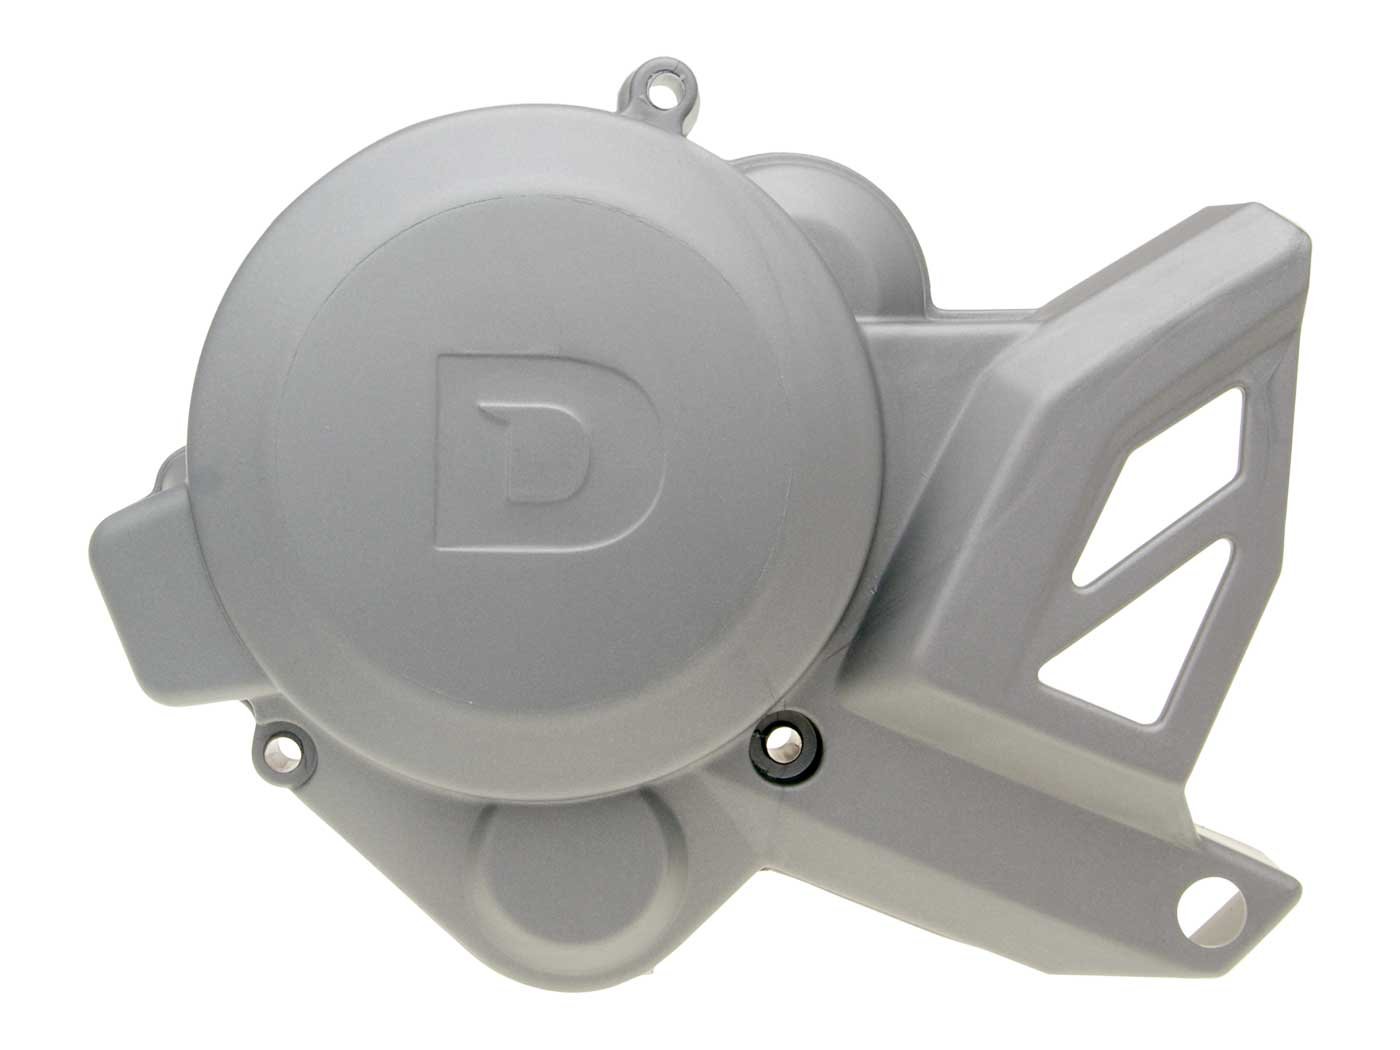 Lichtmaschinendeckel OEM für Piaggio/Derbi Motor D50B0 von PIAGGIO